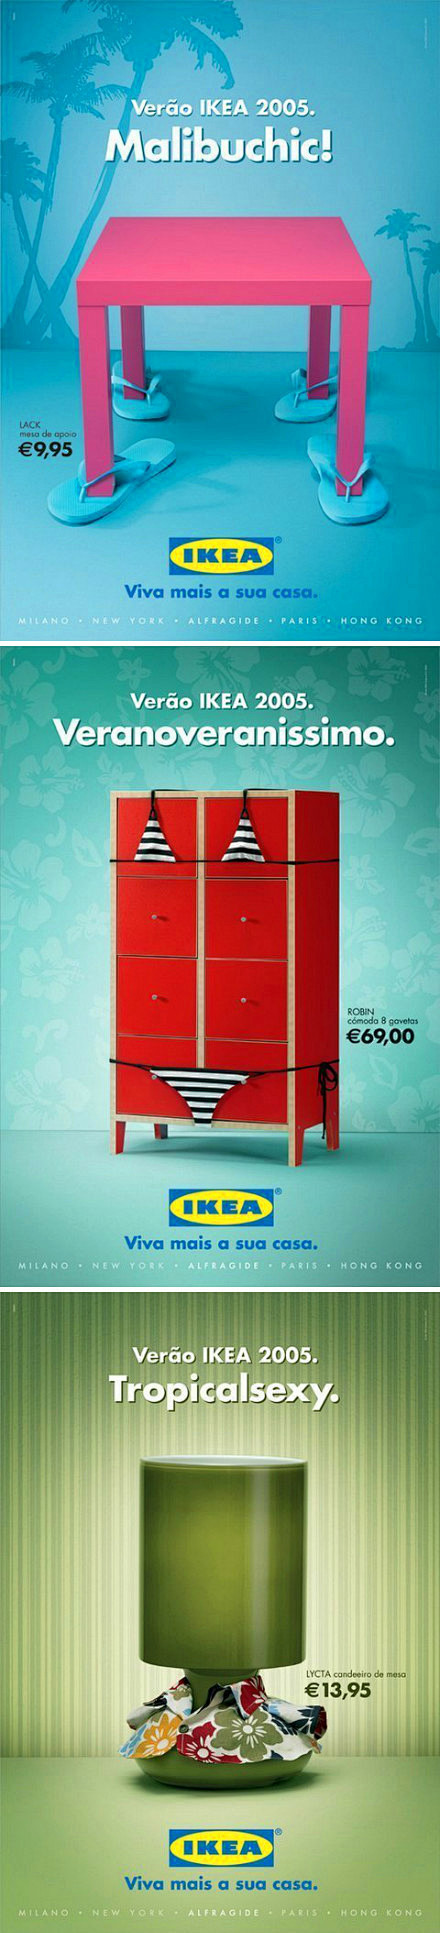 IKEA(宜家家居)夏季新品广告